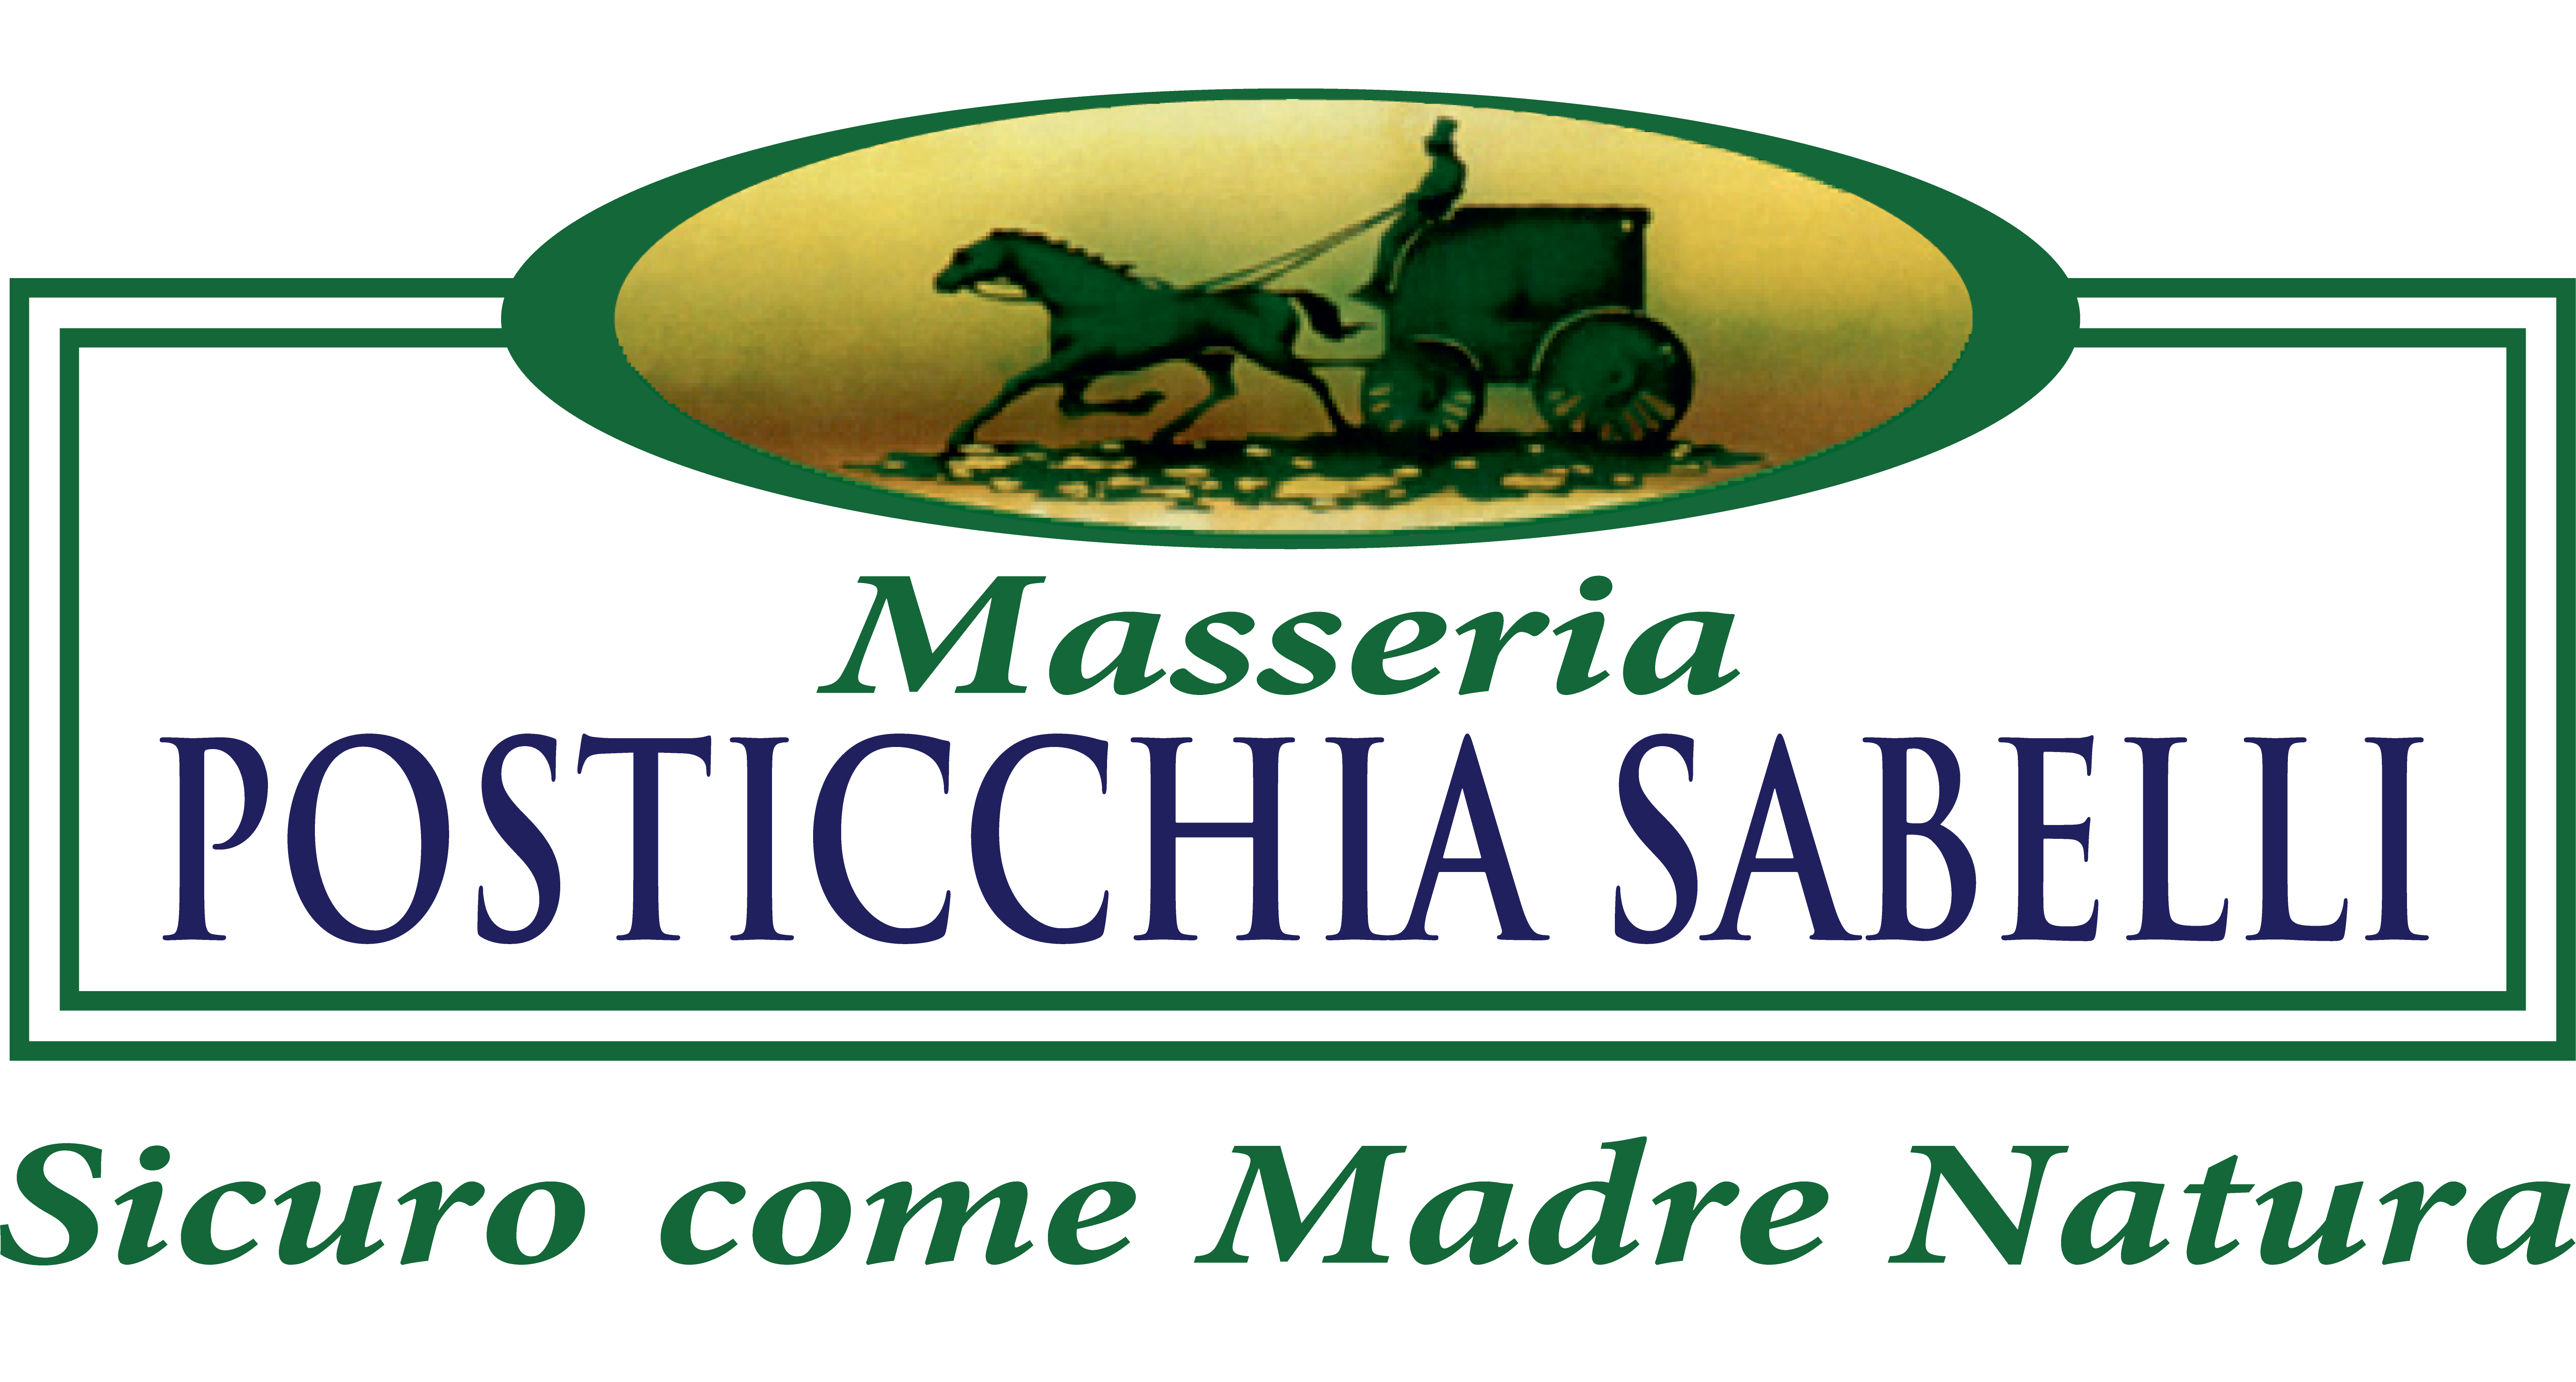 Masseria Posticchia Sabelli